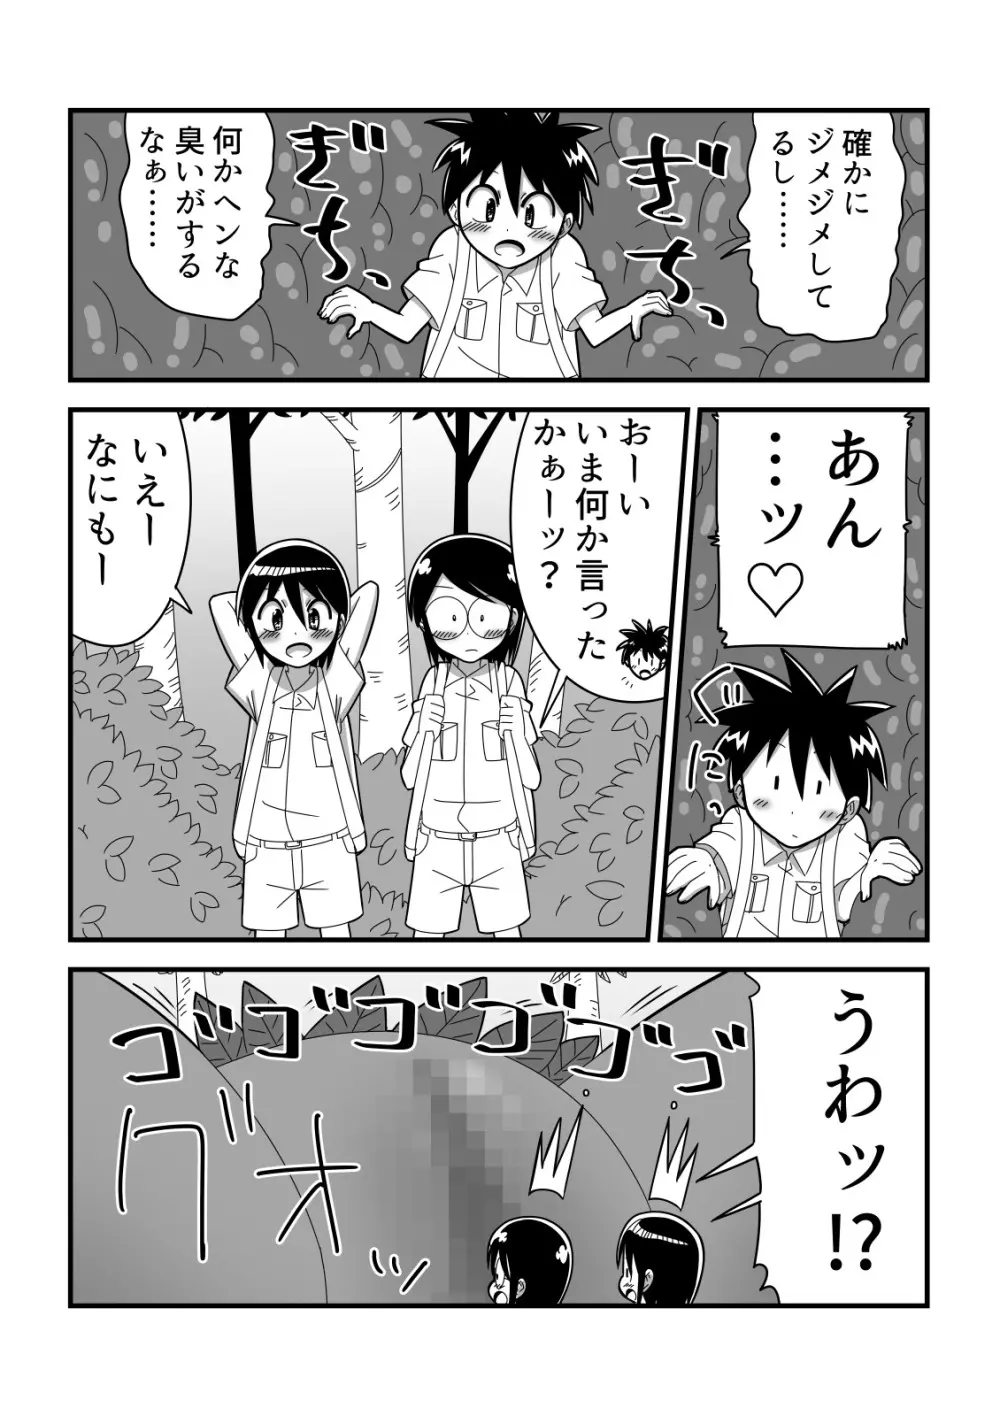 人外おねショタ漫画詰め合わせ集Vol.１ 6ページ